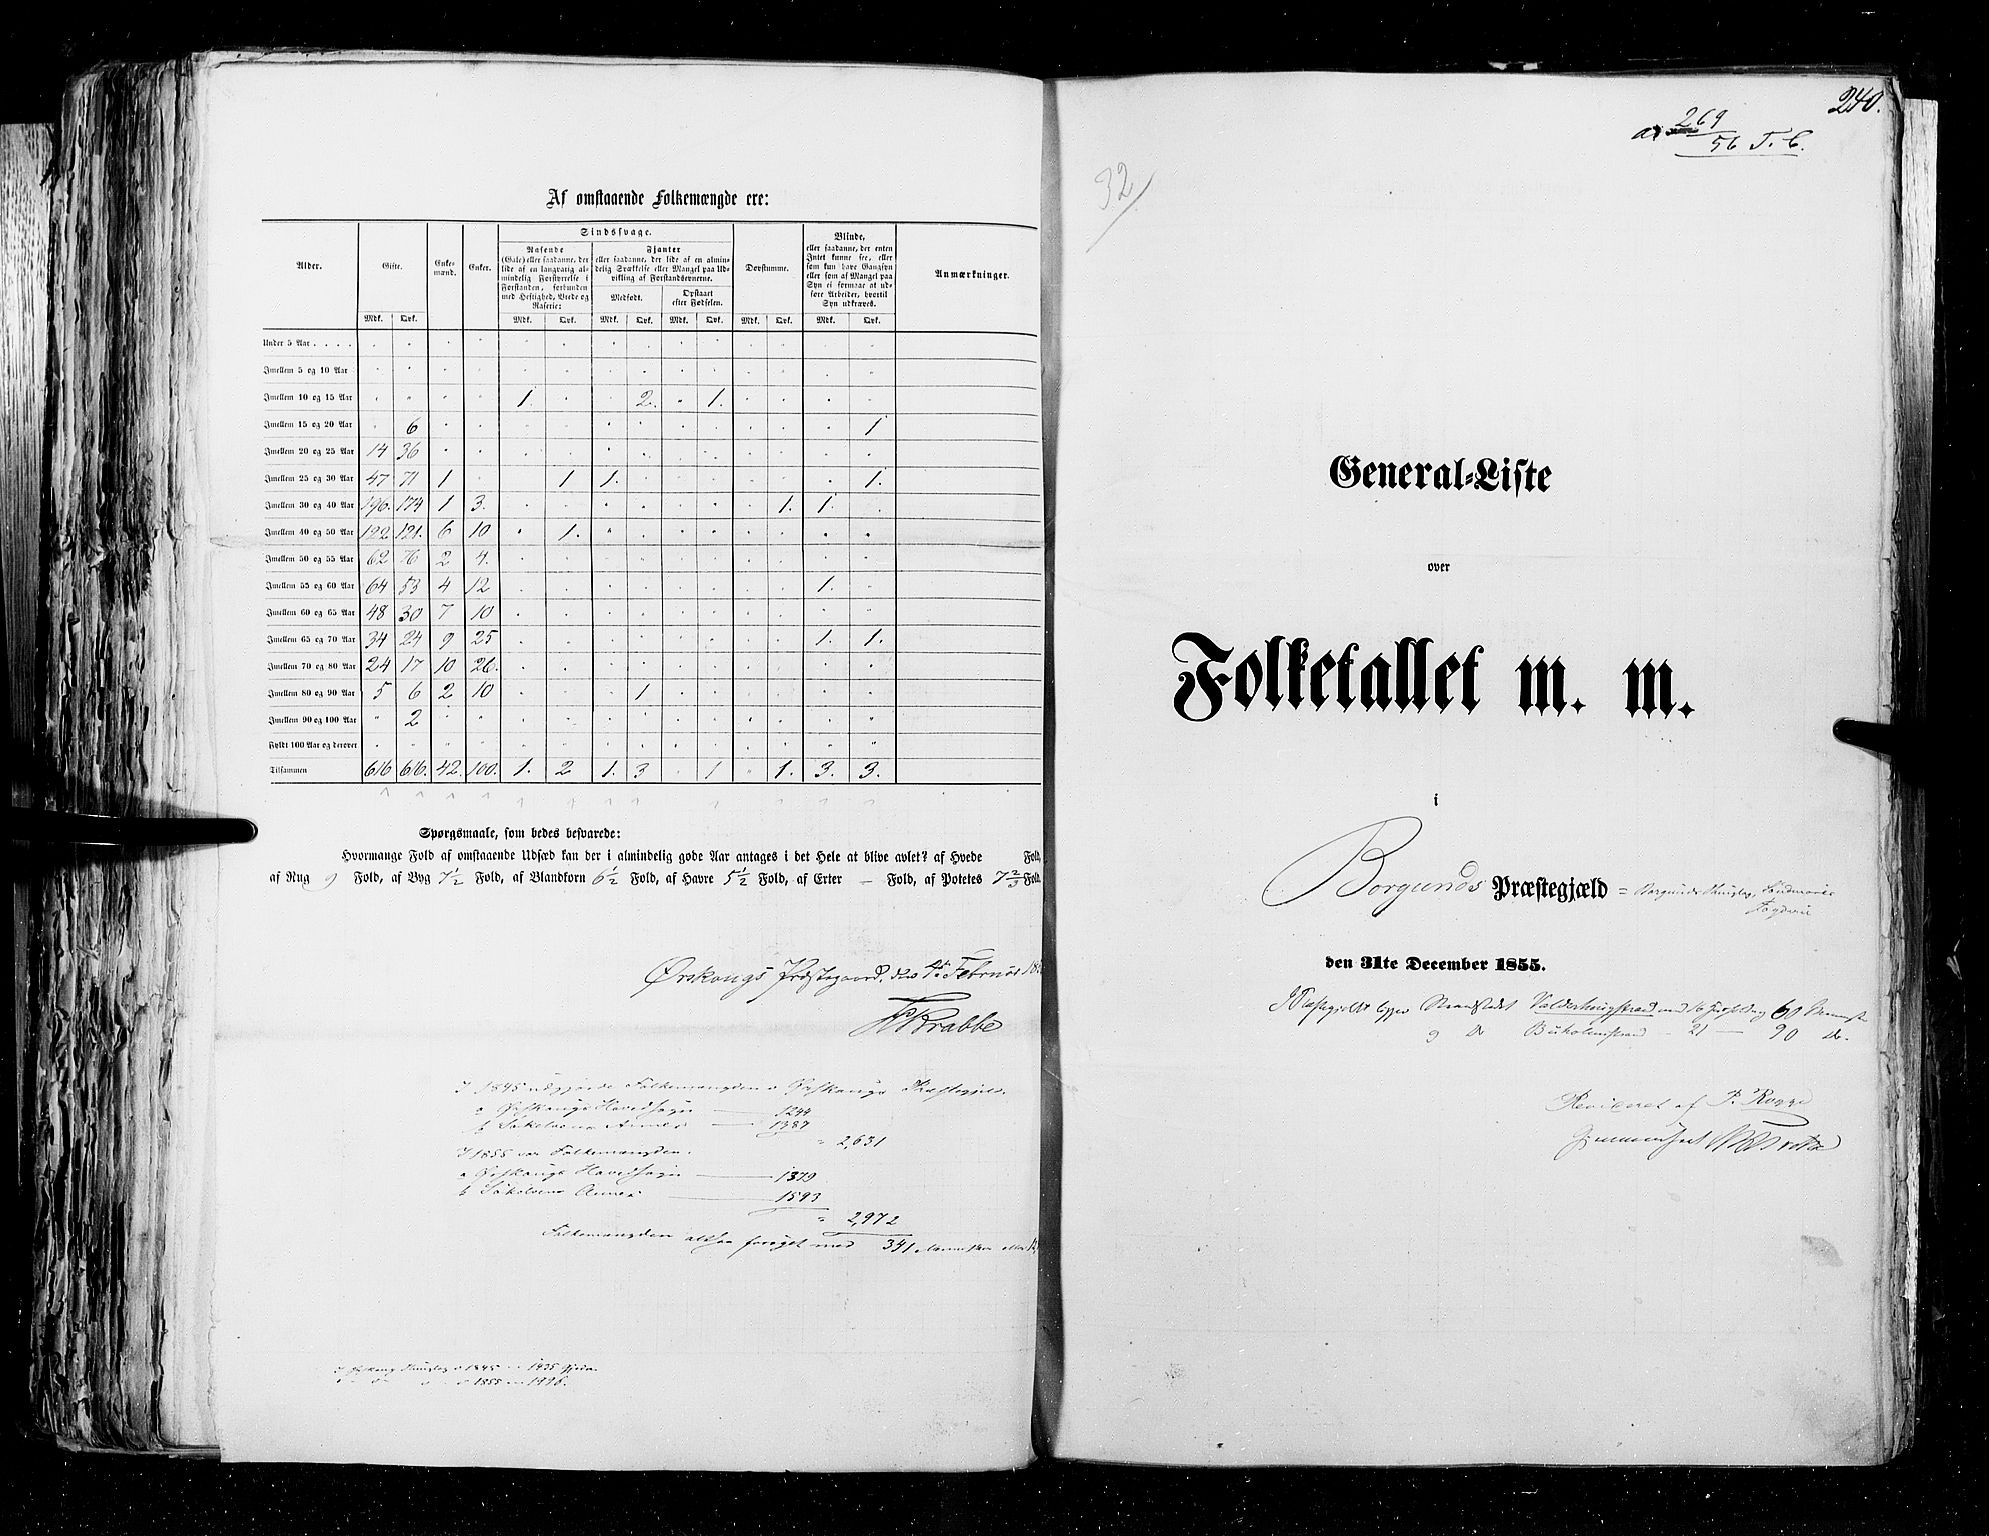 RA, Folketellingen 1855, bind 5: Nordre Bergenhus amt, Romsdal amt og Søndre Trondhjem amt, 1855, s. 240